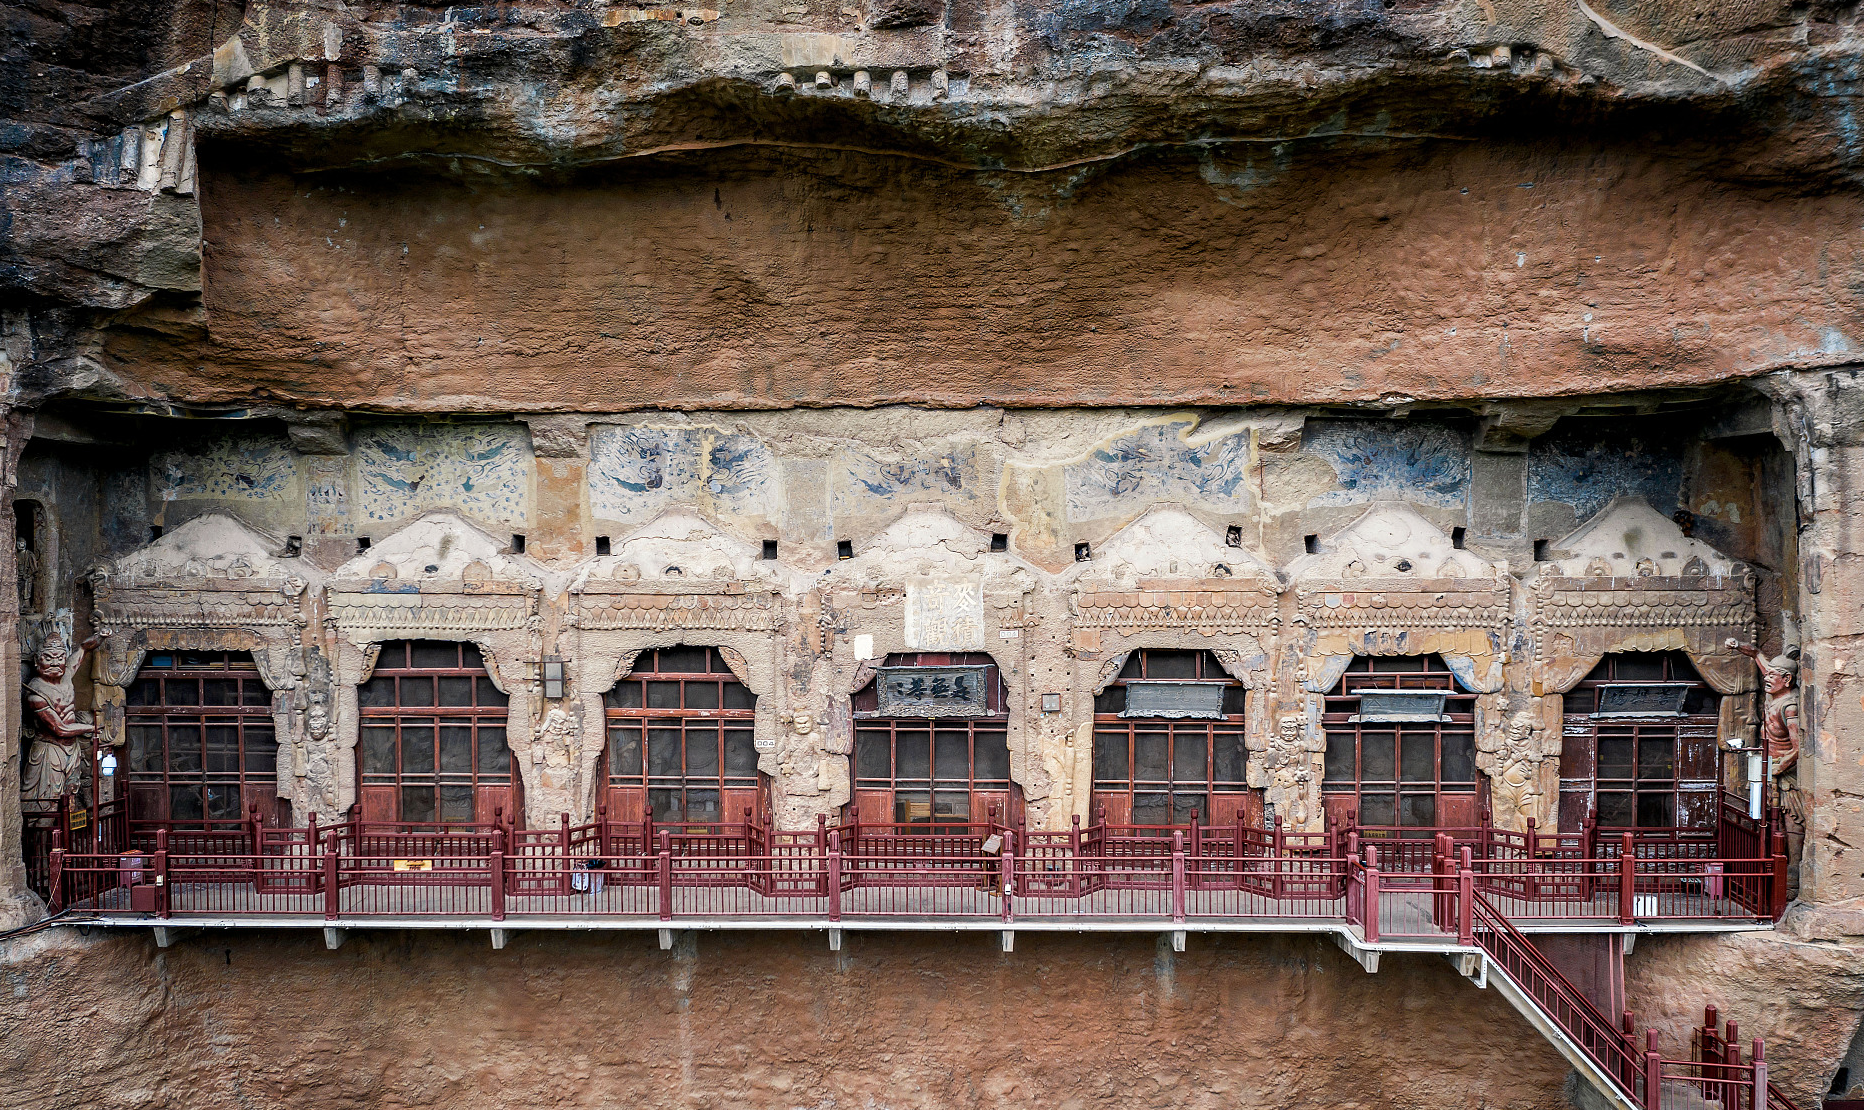 龙门石窟:世界文化遗产,中国四大石窟之一,历史悠久